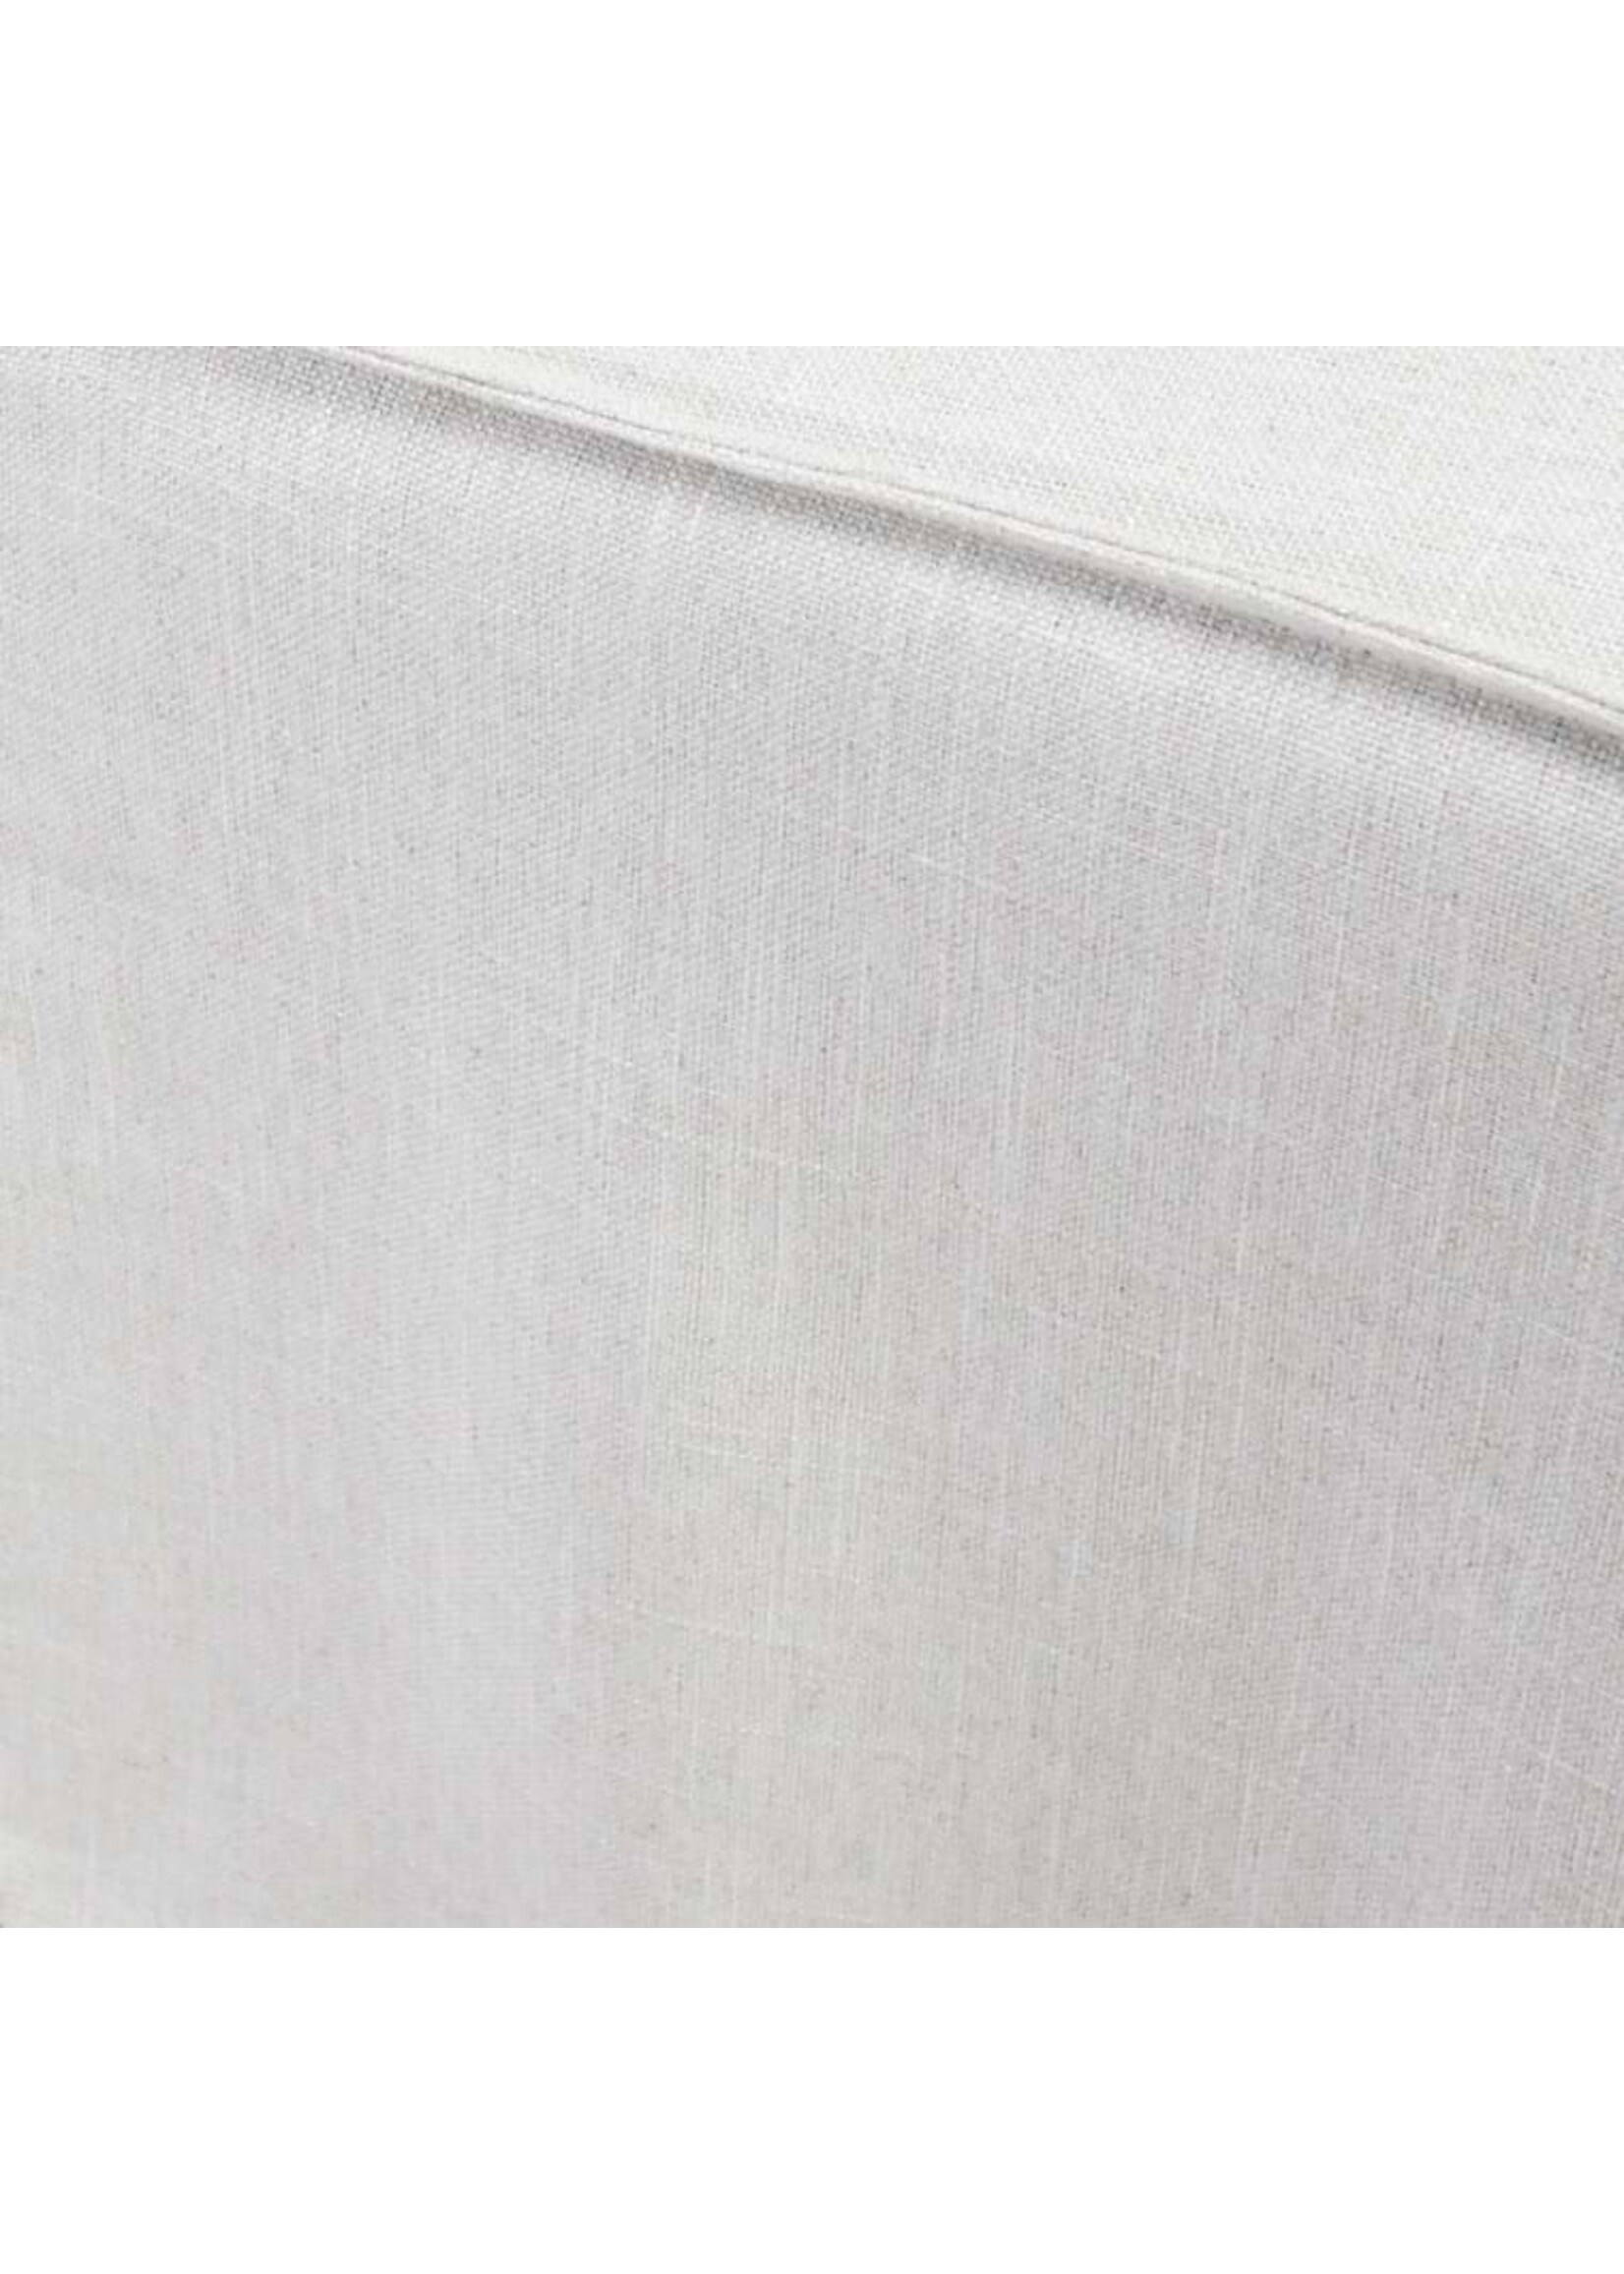 Jordan Upholstered Dining Chair-White